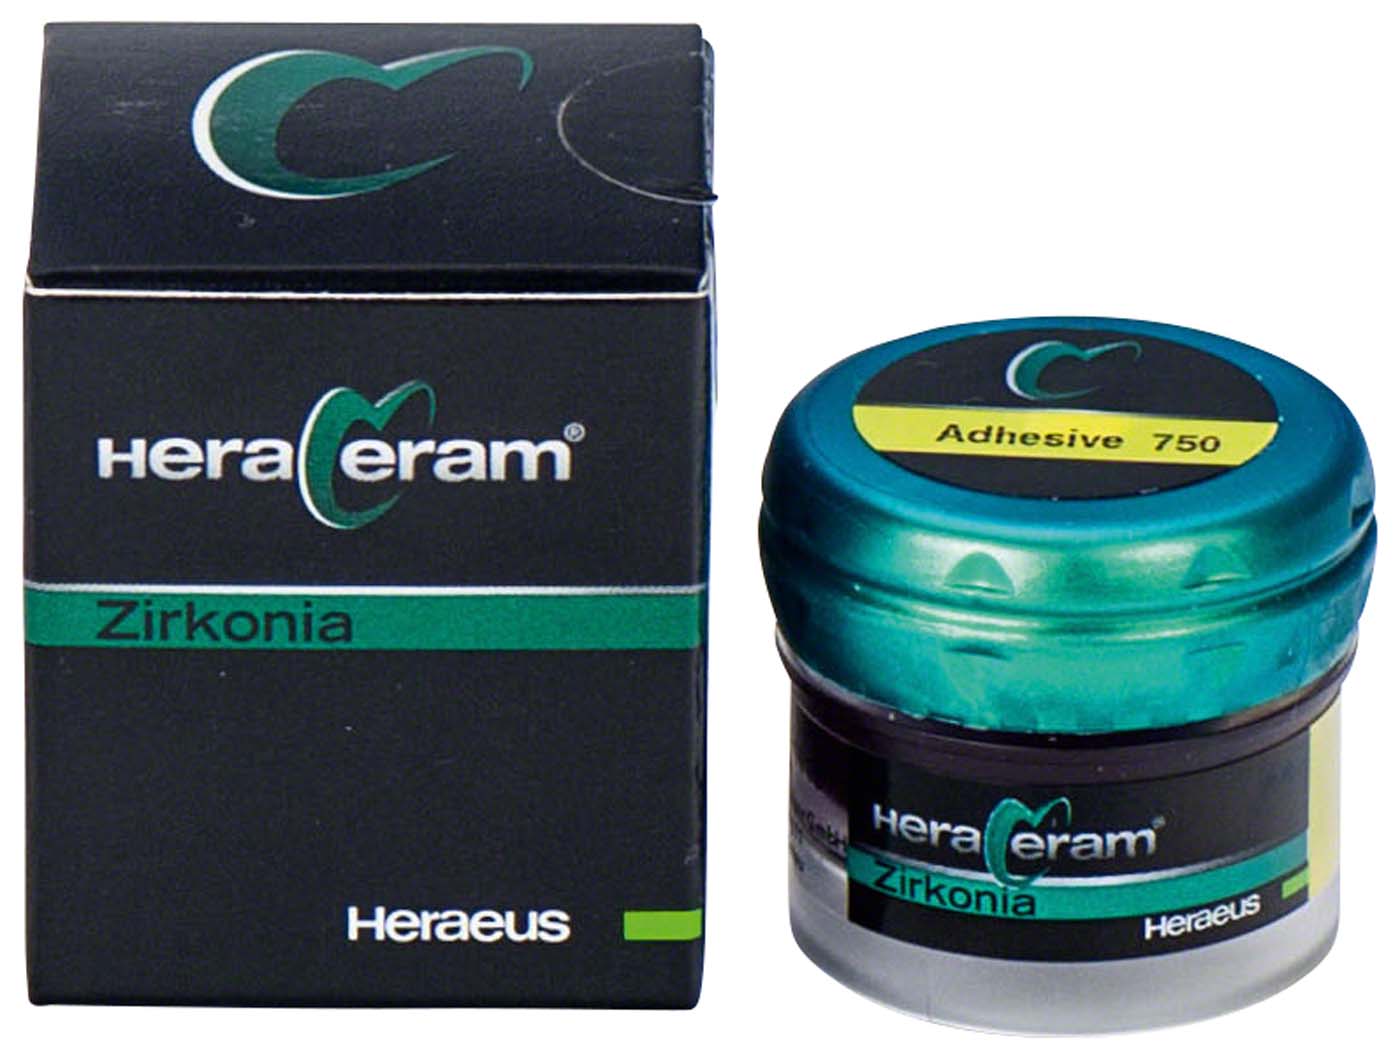 HeraCeram® Zirkonia 750 Adhesive Kulzer